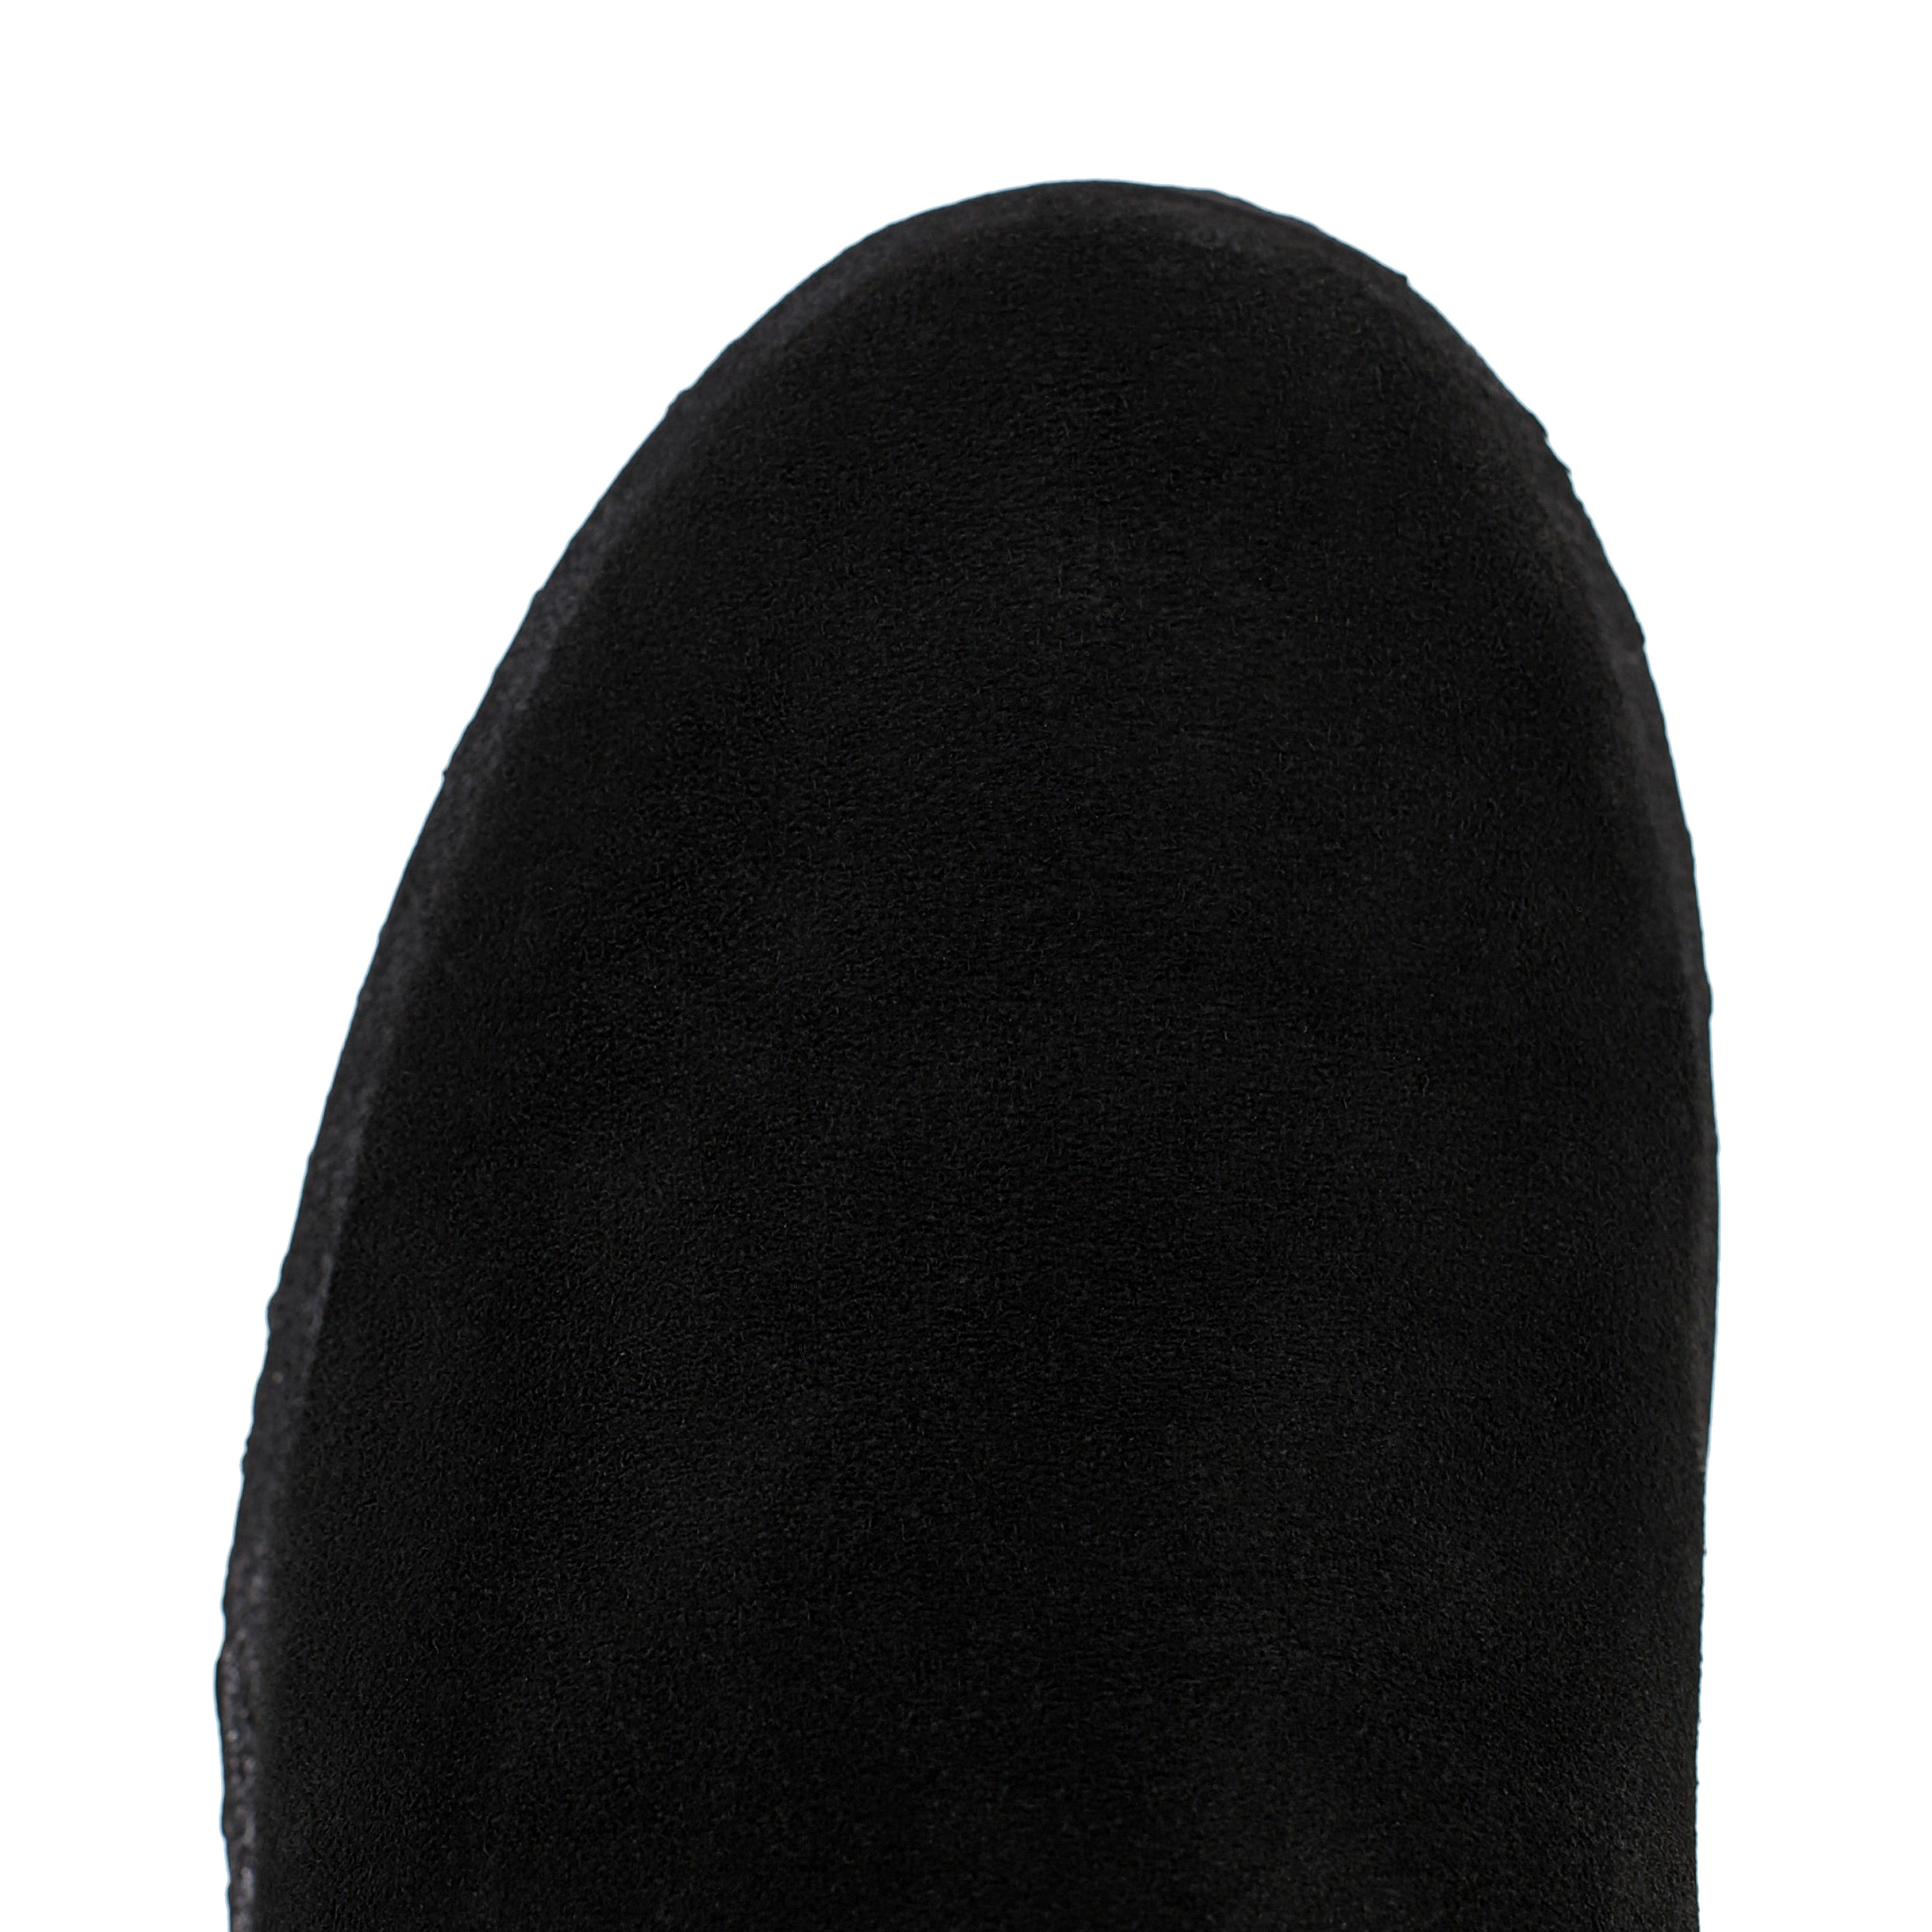 Ботинки Thomas Munz 77-009A-3501 77-009A-3501, цвет черный, размер 39 - фото 5